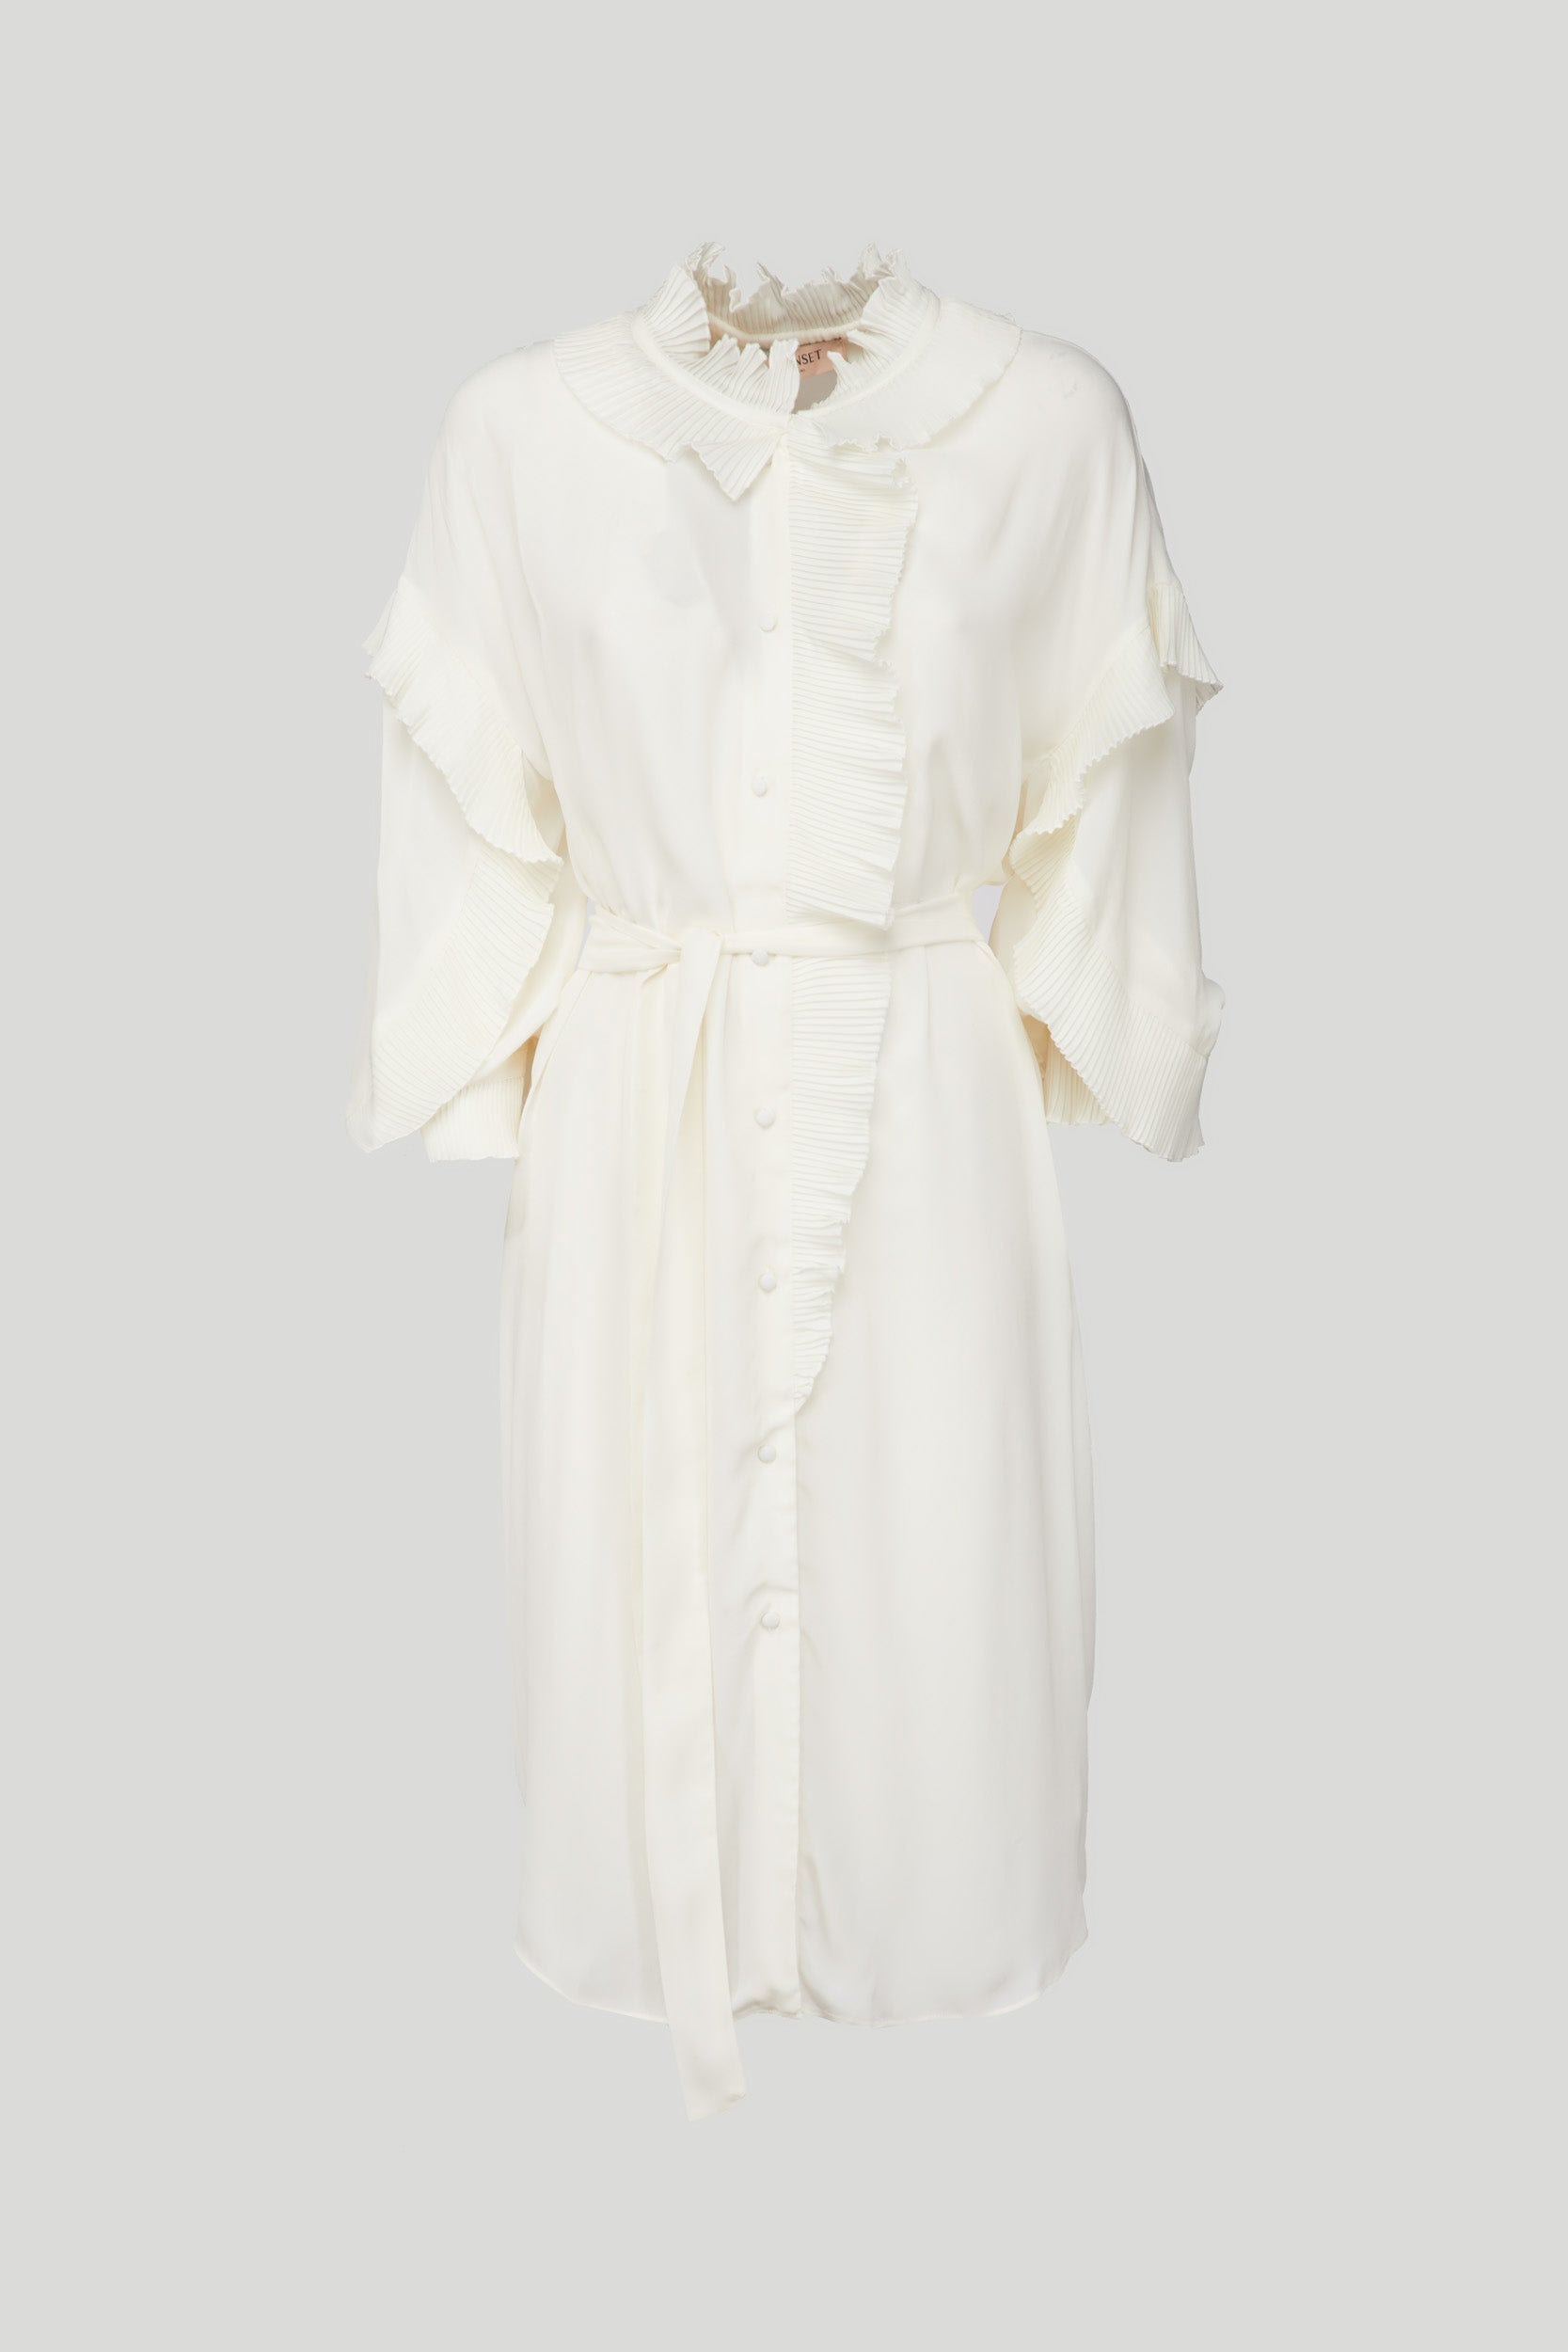 TWINSET White Crêpe de Chine Dress